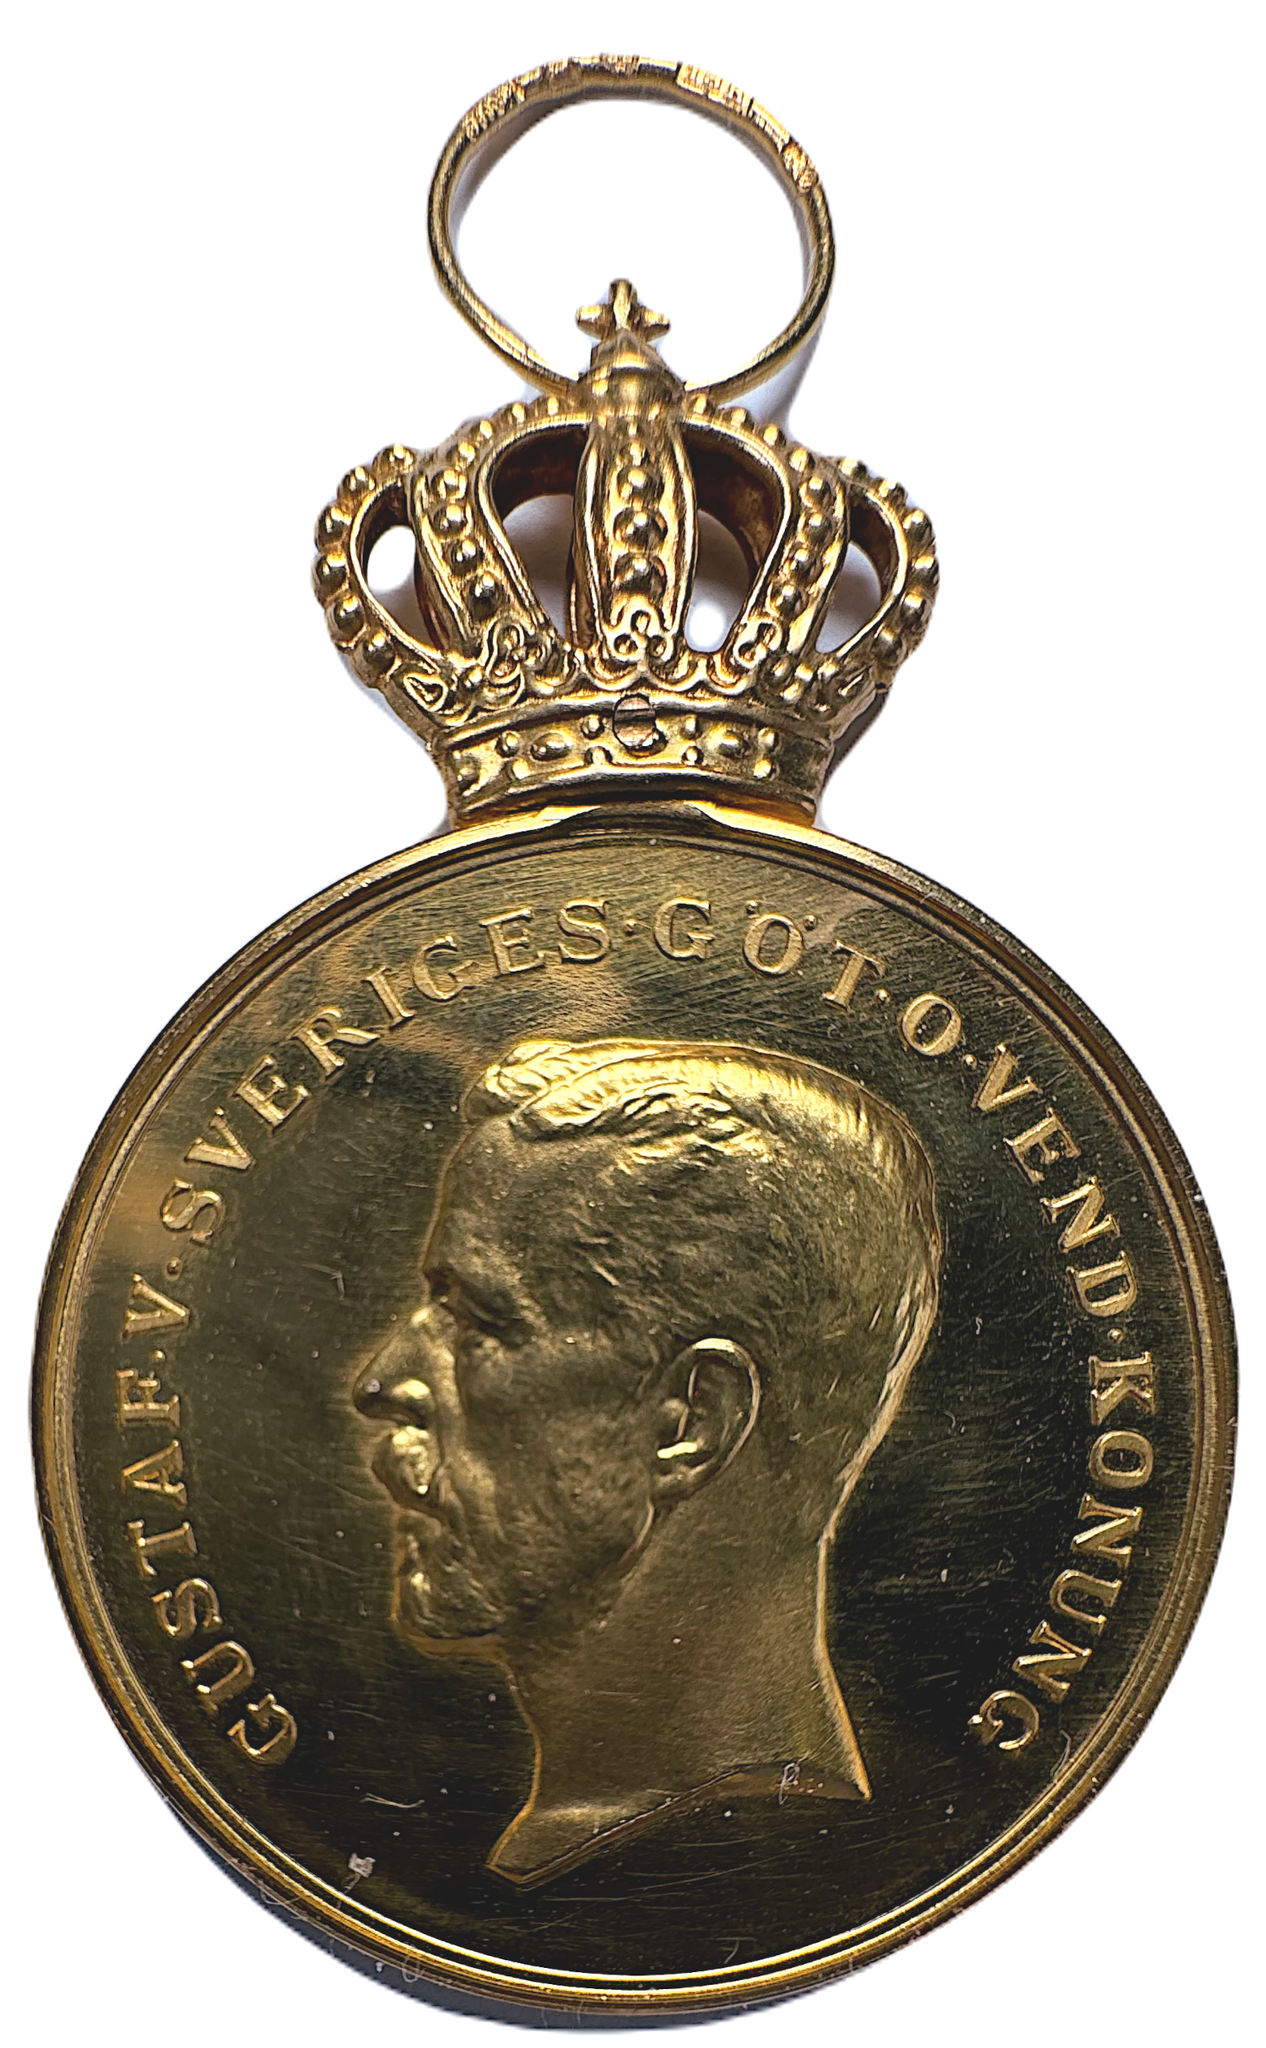 Gustav V - Kungliga Patriotiska Sällsakpets belöningsmedalj i guld - Ett underbart och osedvanligt välbevarat exemplar